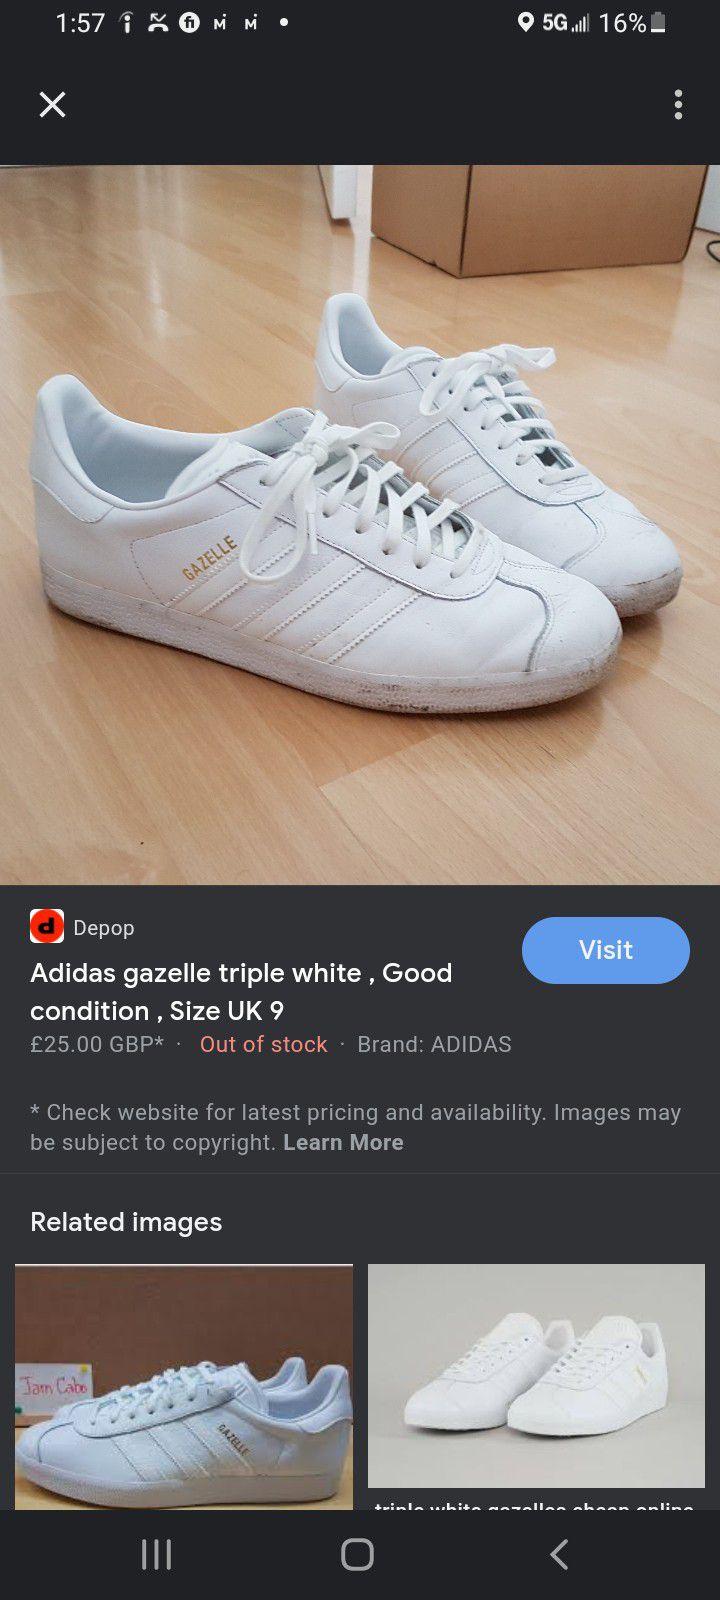 Adidas Gazelle Triple White